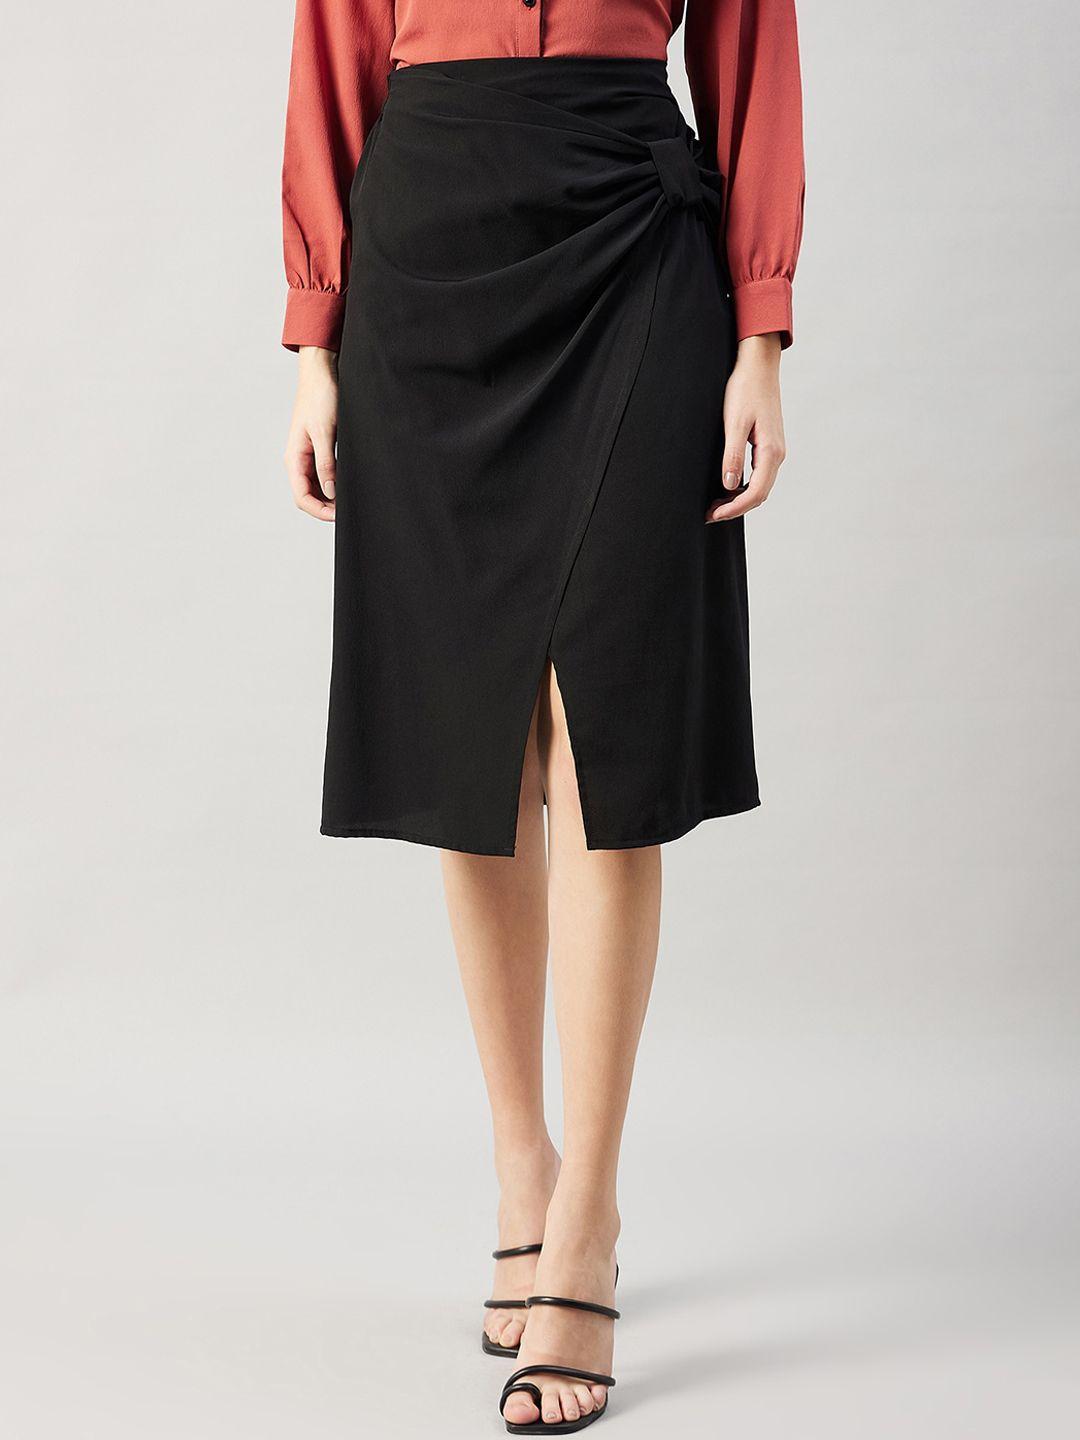 winered side bow knee-length skirt